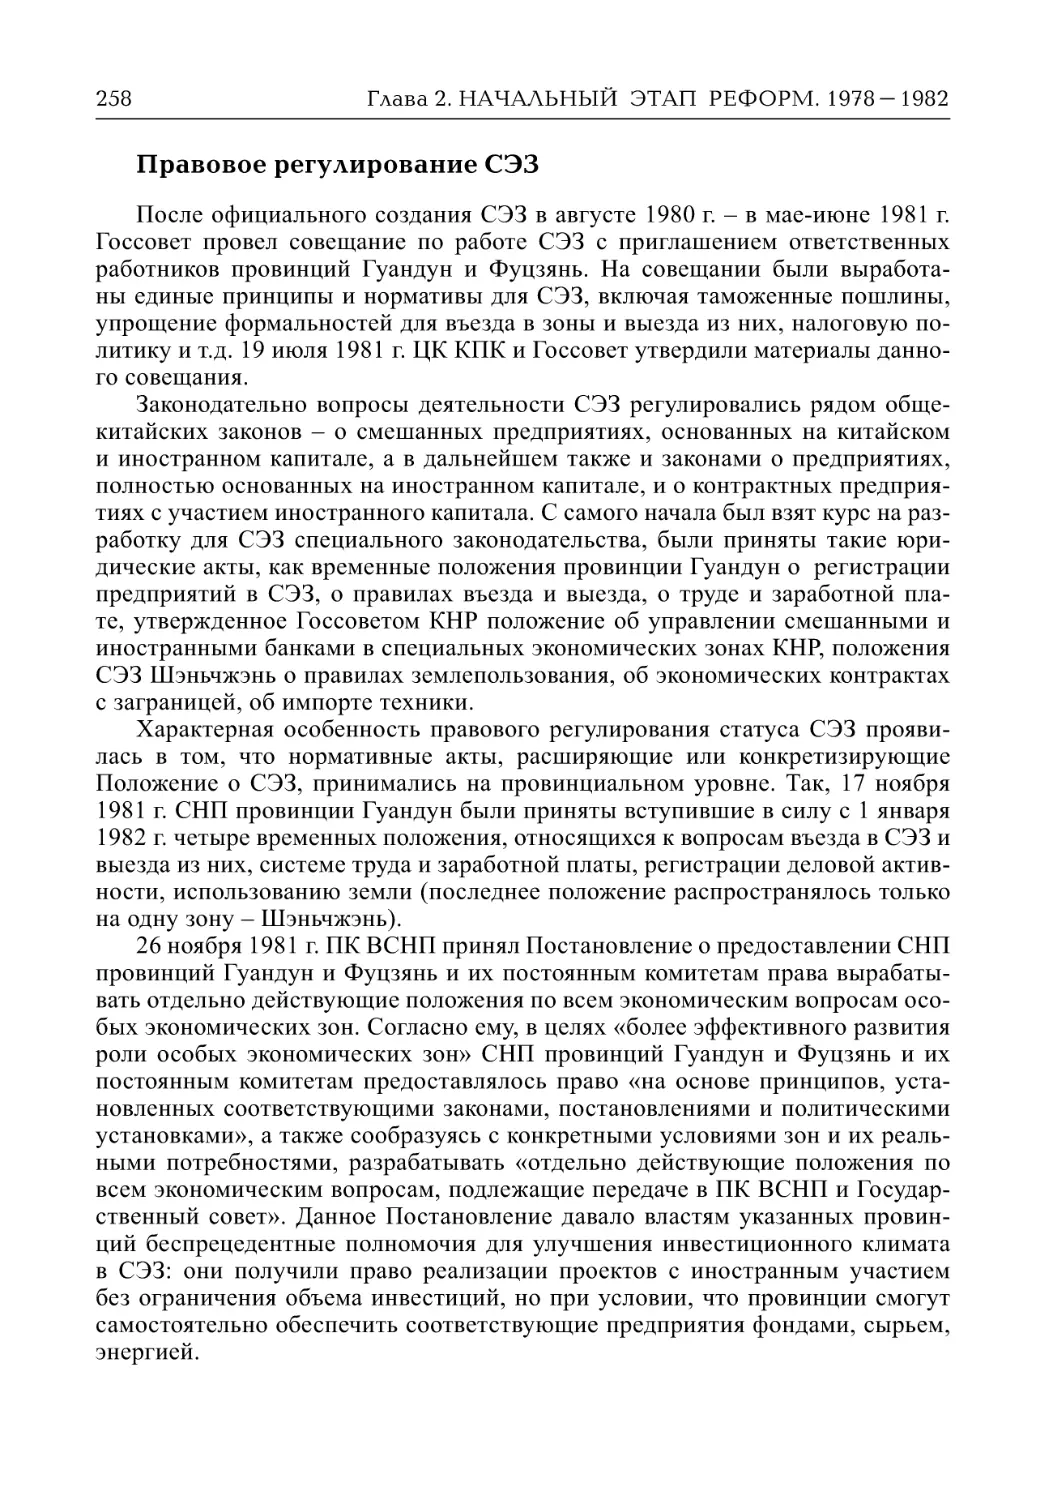 Правовое регулирование СЭЗ (Л.М. Гудошников)